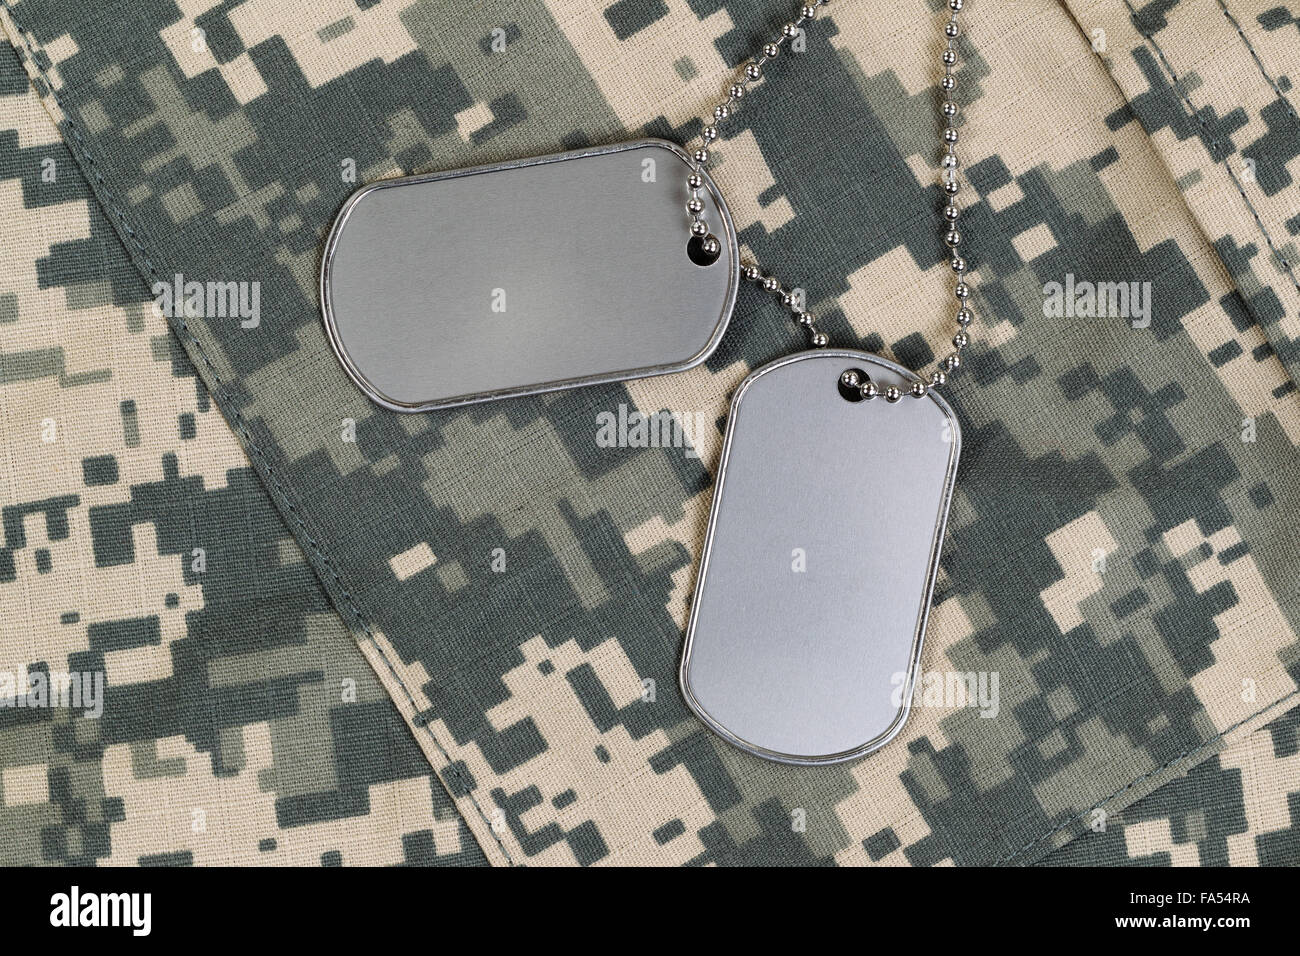 Militärische Identifikation Tags, Halskette und Bekämpfung einheitliche Spitze. Militärischer Service-Konzept. Stockfoto